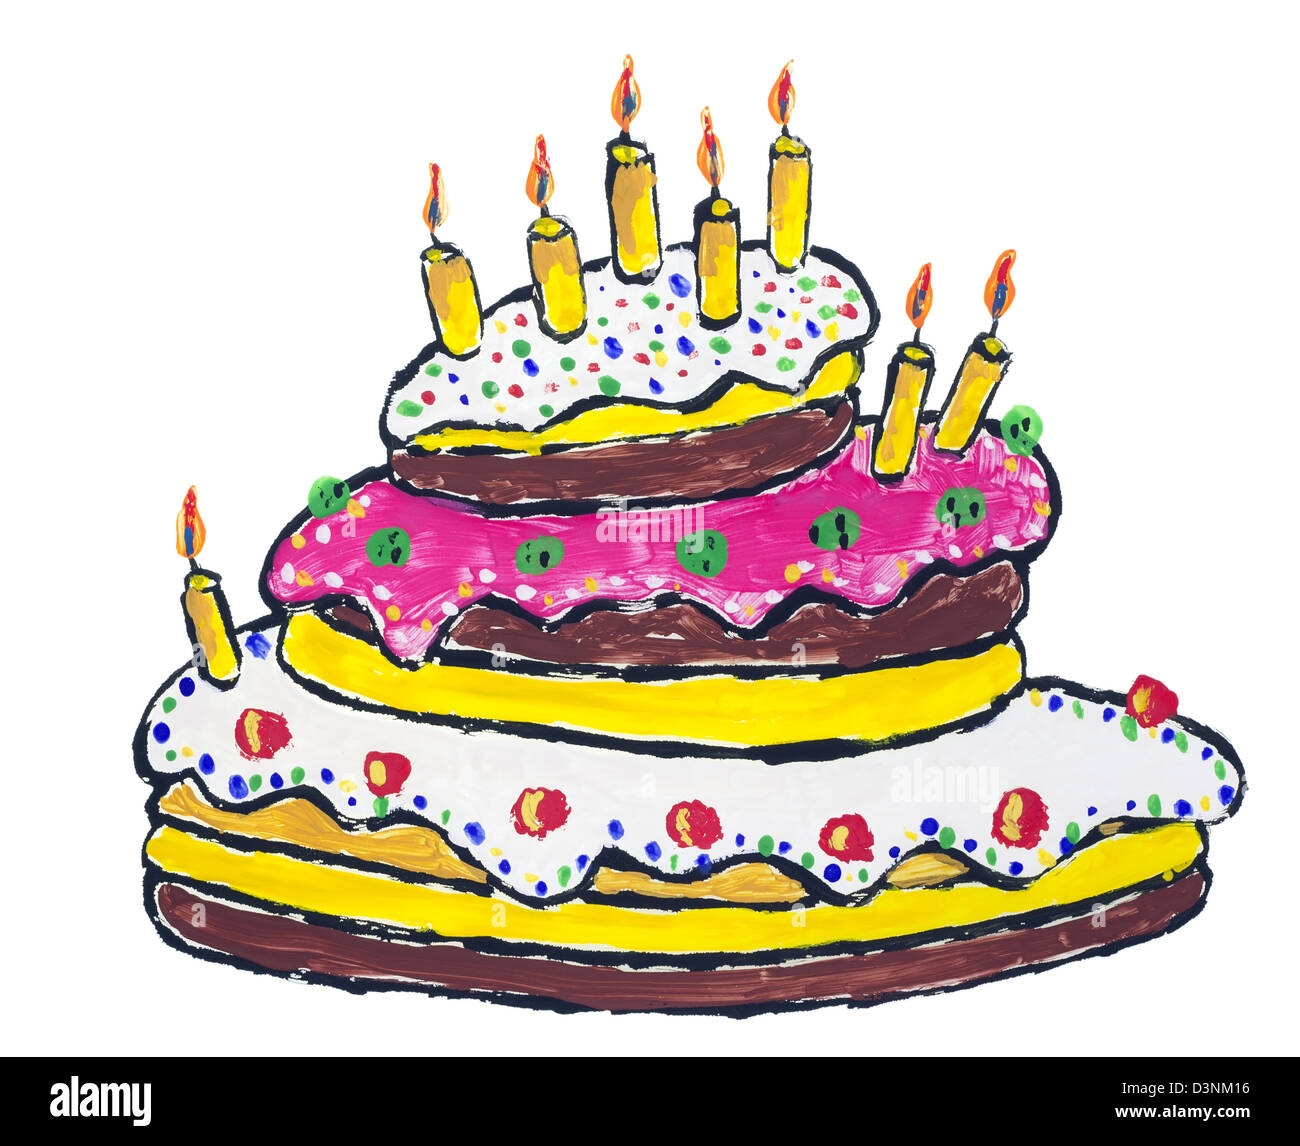 Именинный торт с днем рождения рисунок